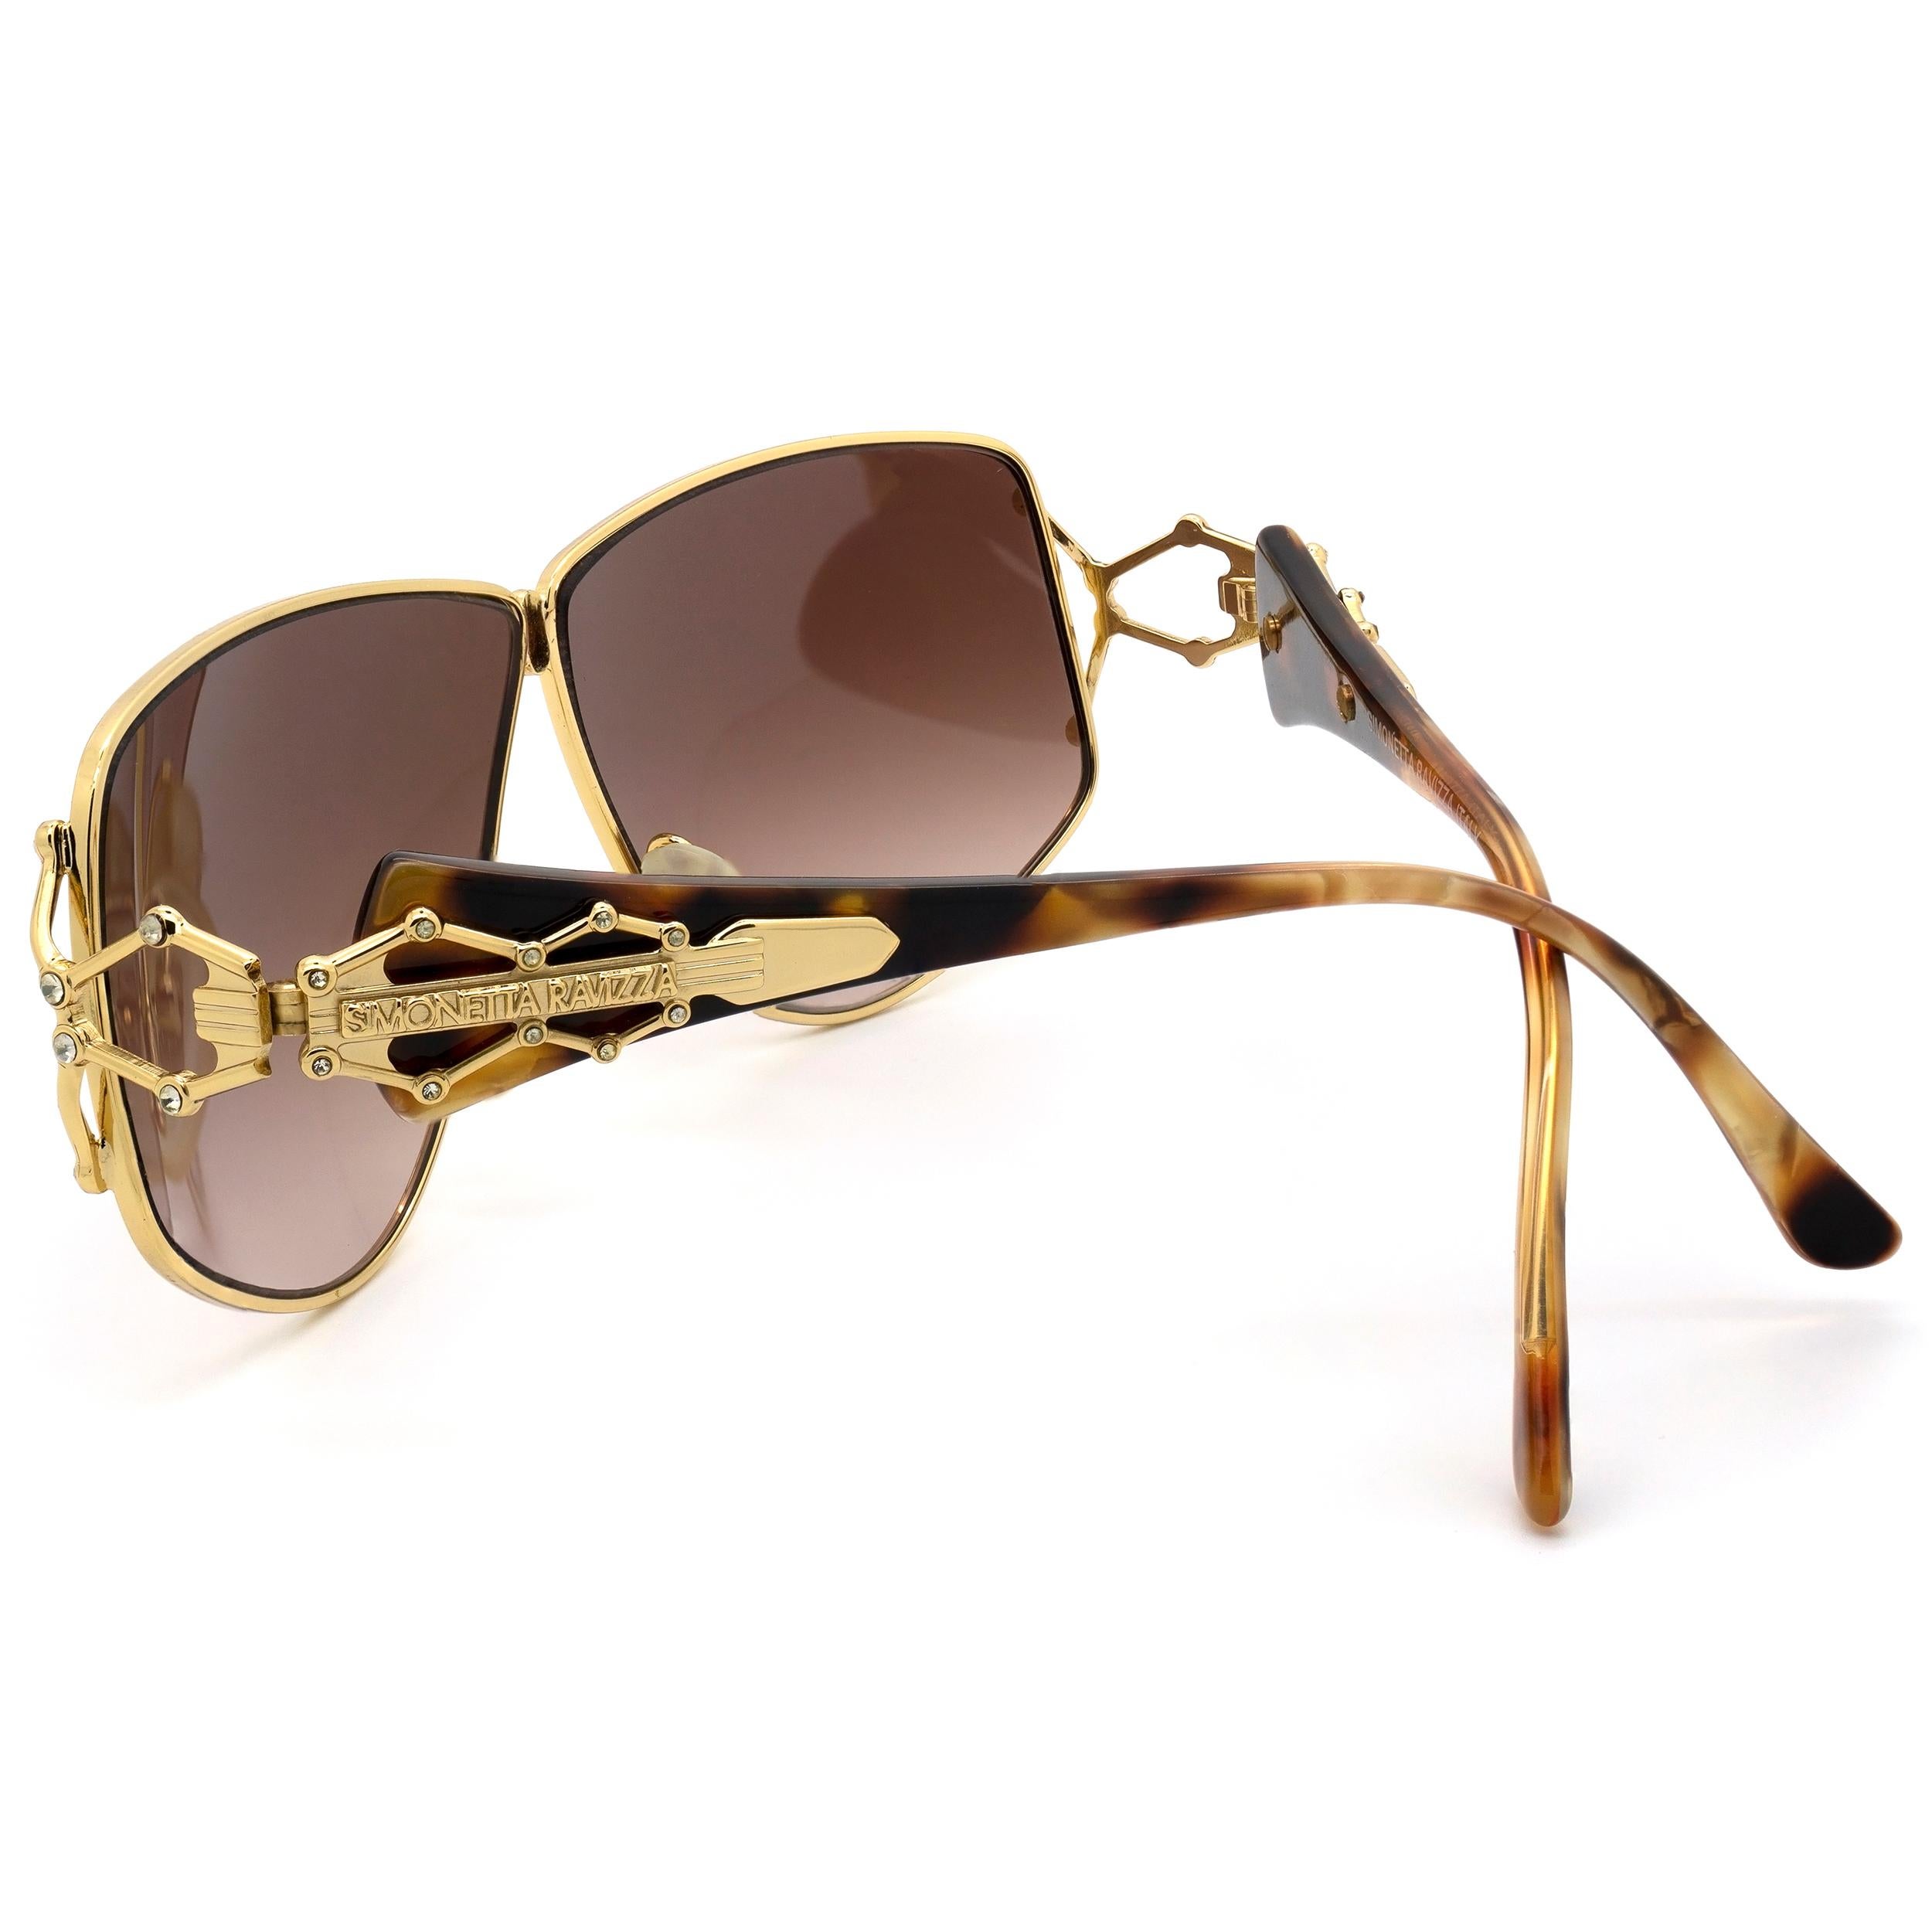 Simonetta Ravizza jewelry vintage sunglasses In Excellent Condition For Sale In Santa Clarita, CA